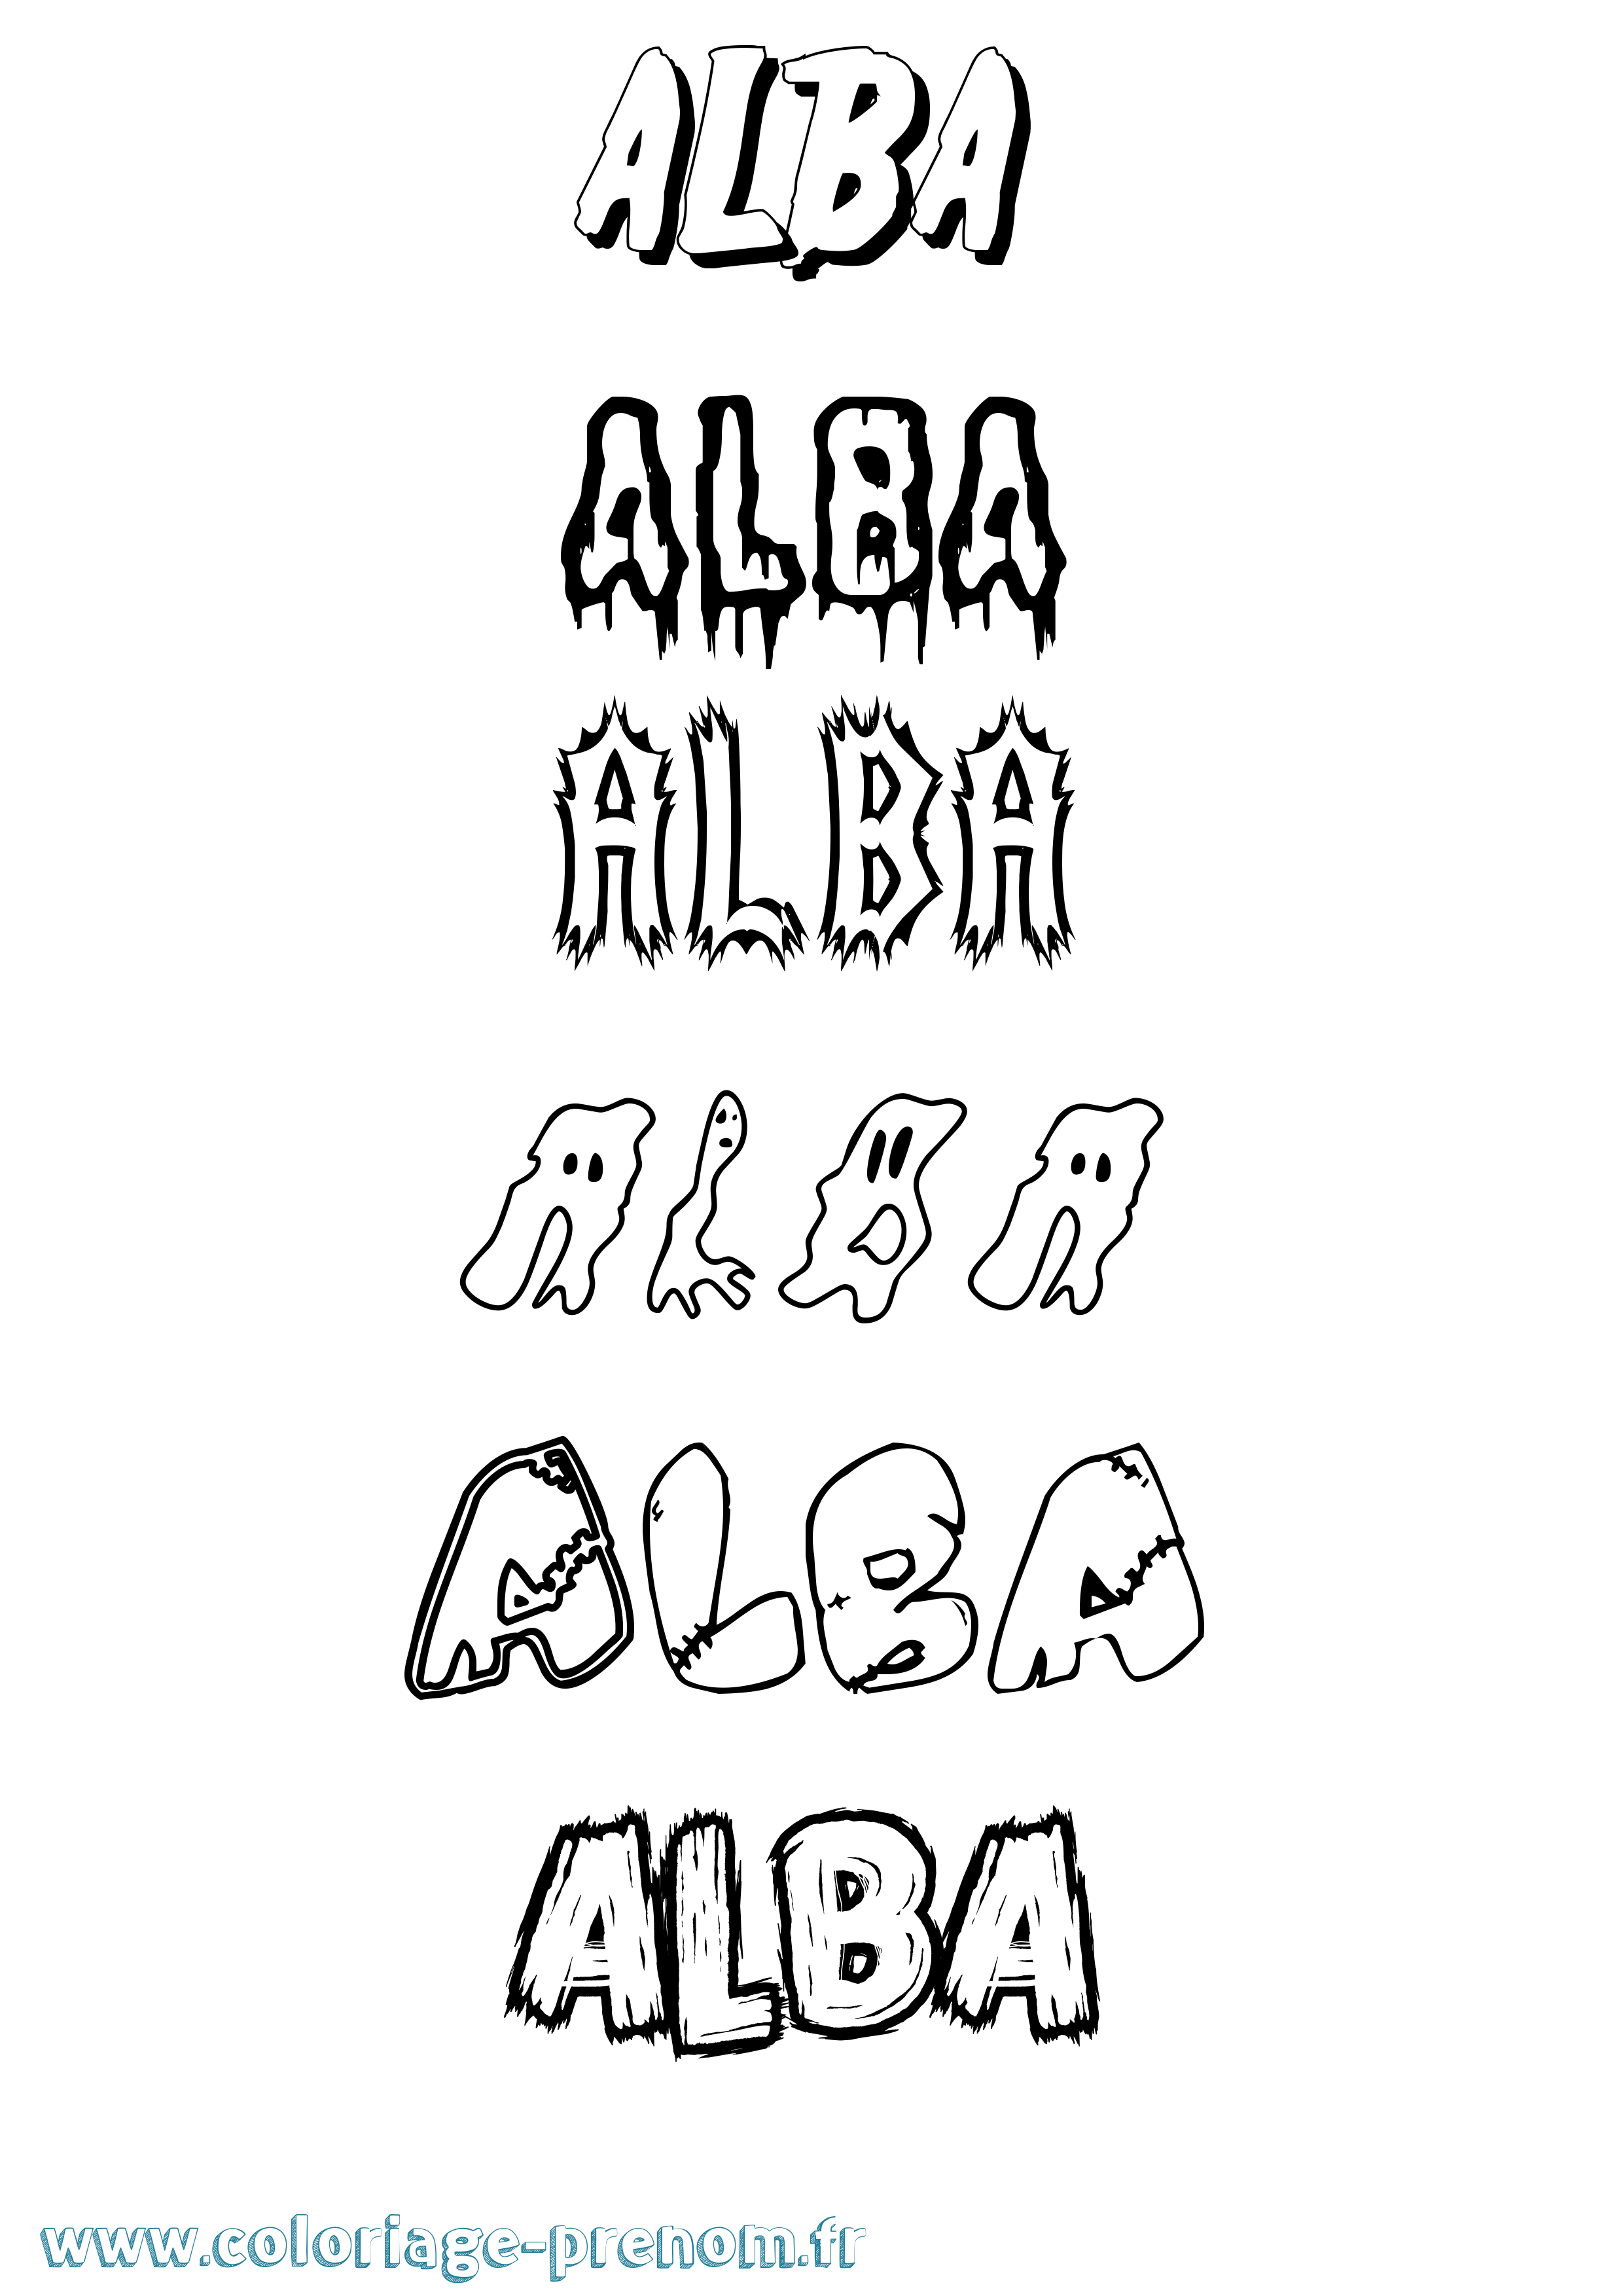 Coloriage prénom Alba Frisson